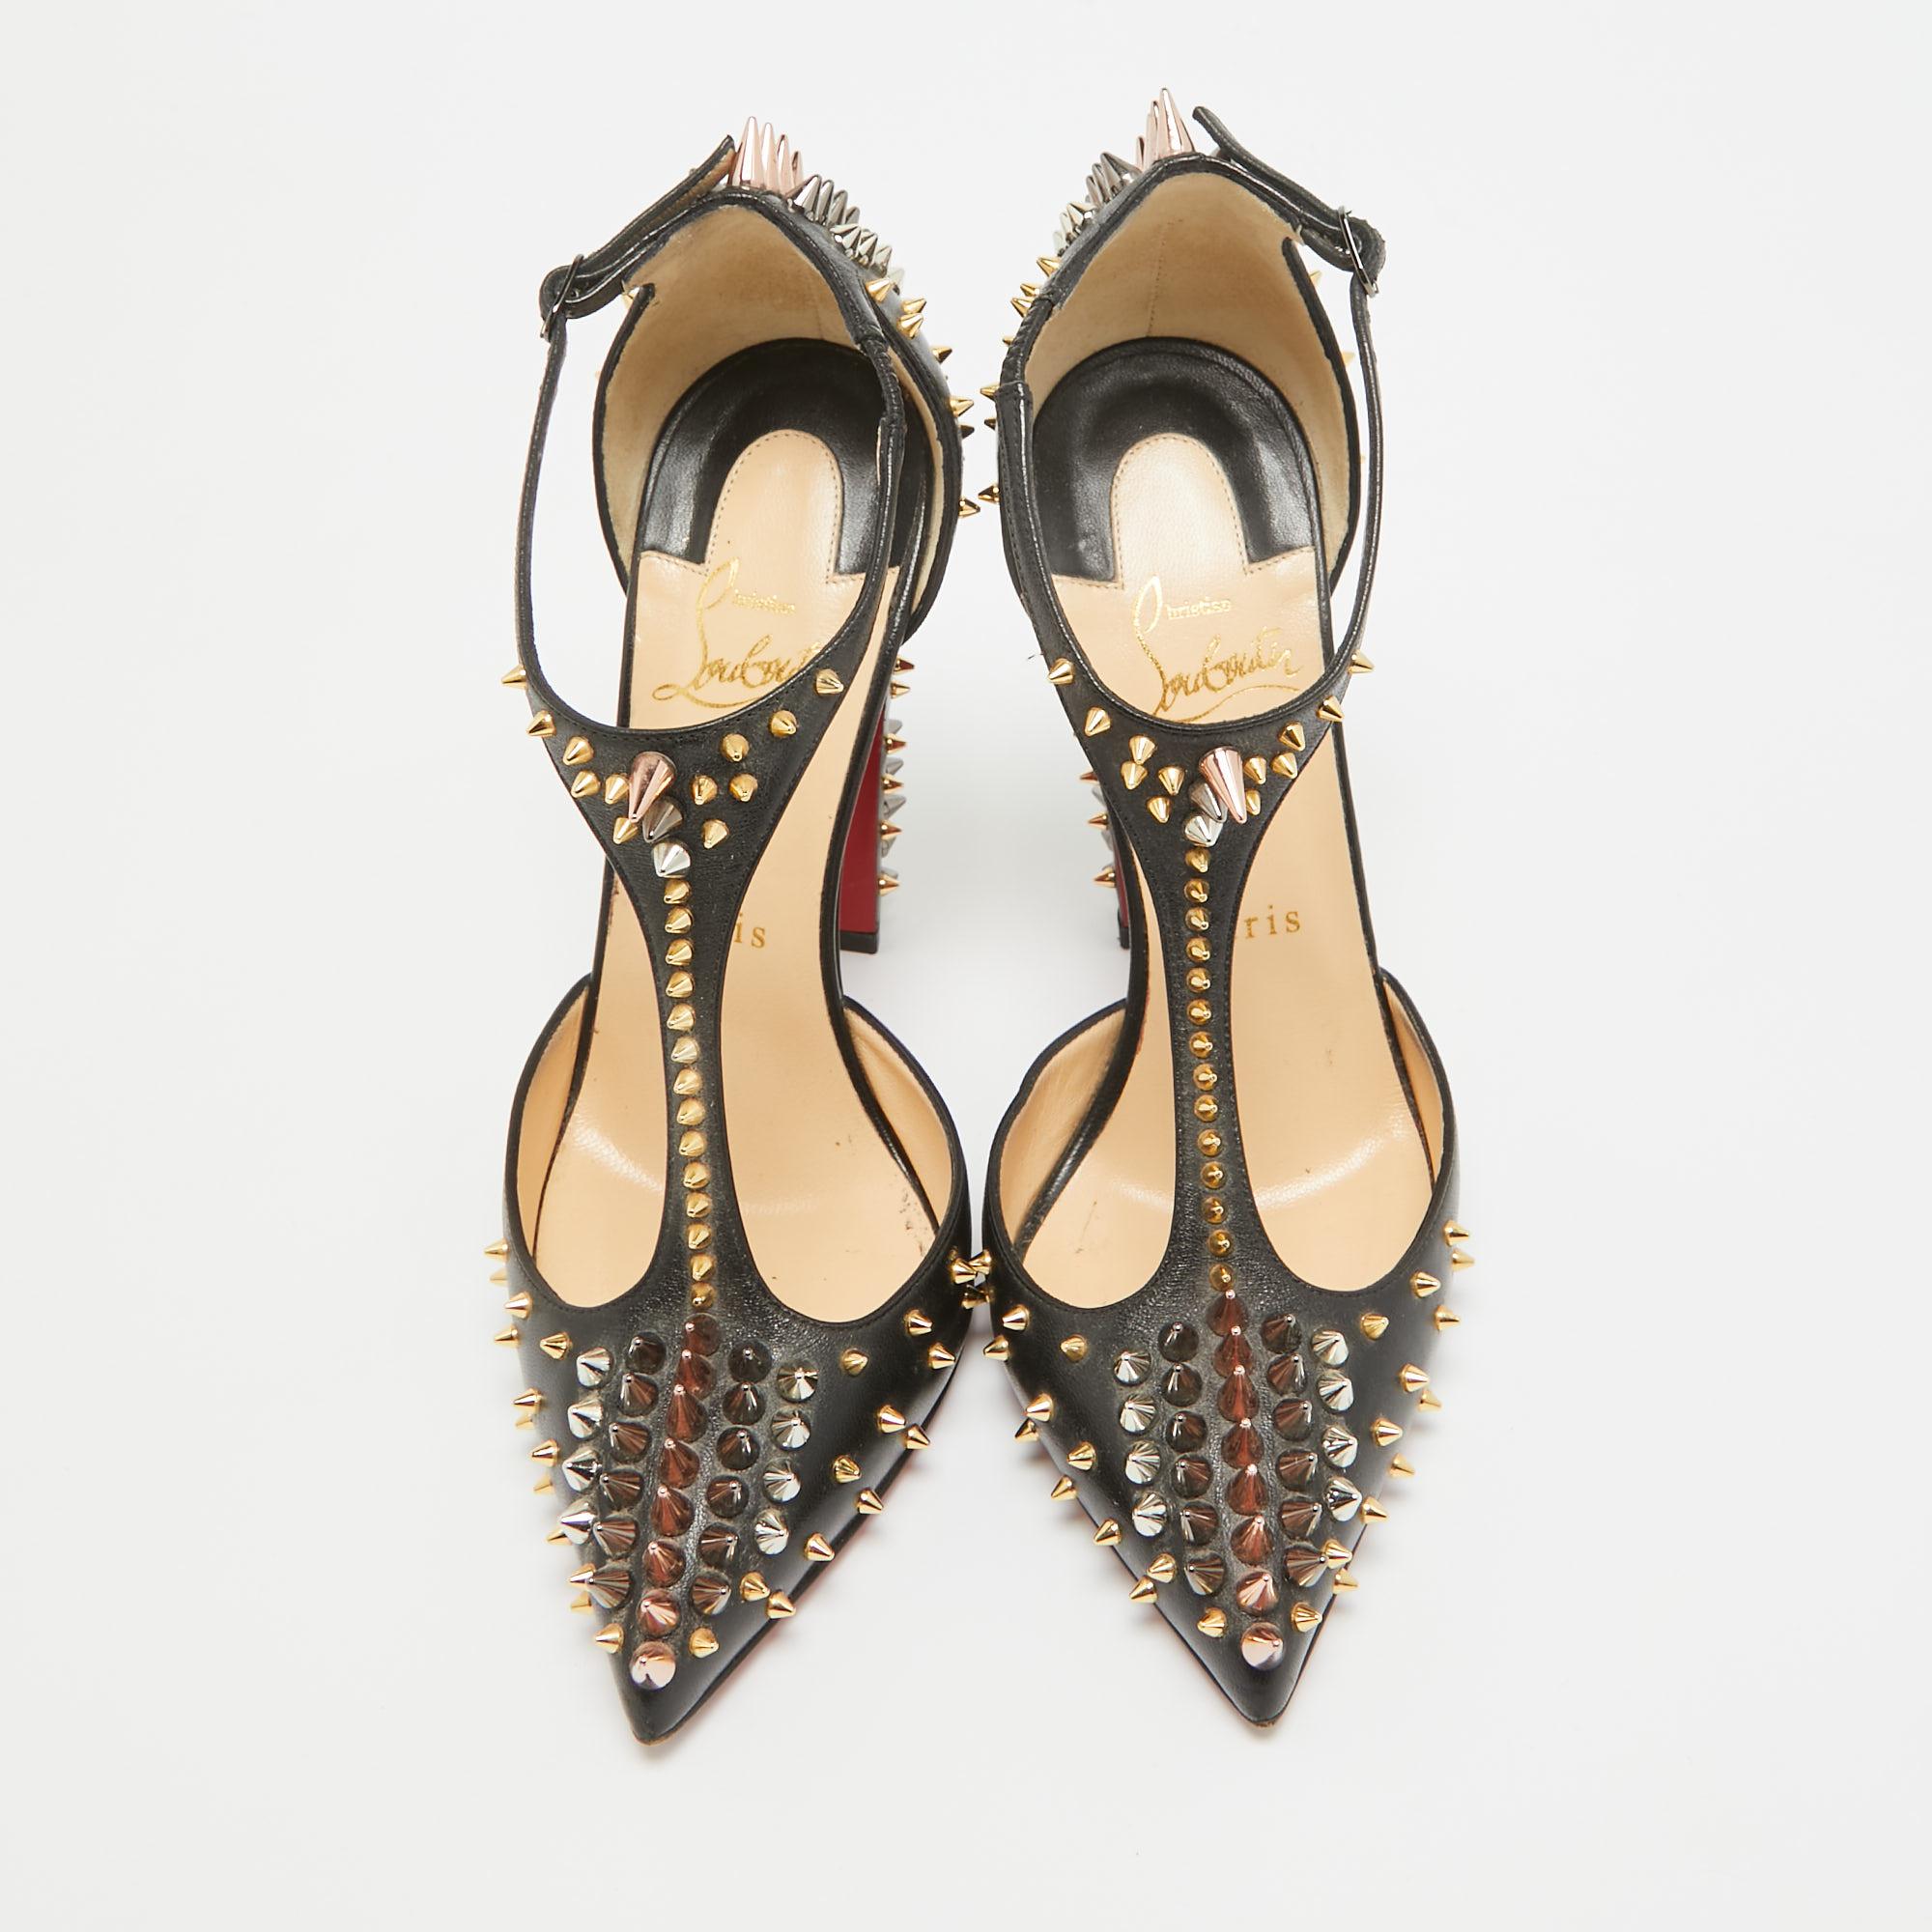 Entdecken Sie die Eleganz des Schuhwerks mit diesen Damenpumps von Christian Louboutin. Diese sorgfältig entworfenen Absätze vereinen Mode und Komfort und sorgen dafür, dass Sie in jeder Umgebung glänzen.

CHRISTIAN LOUBOUTIN